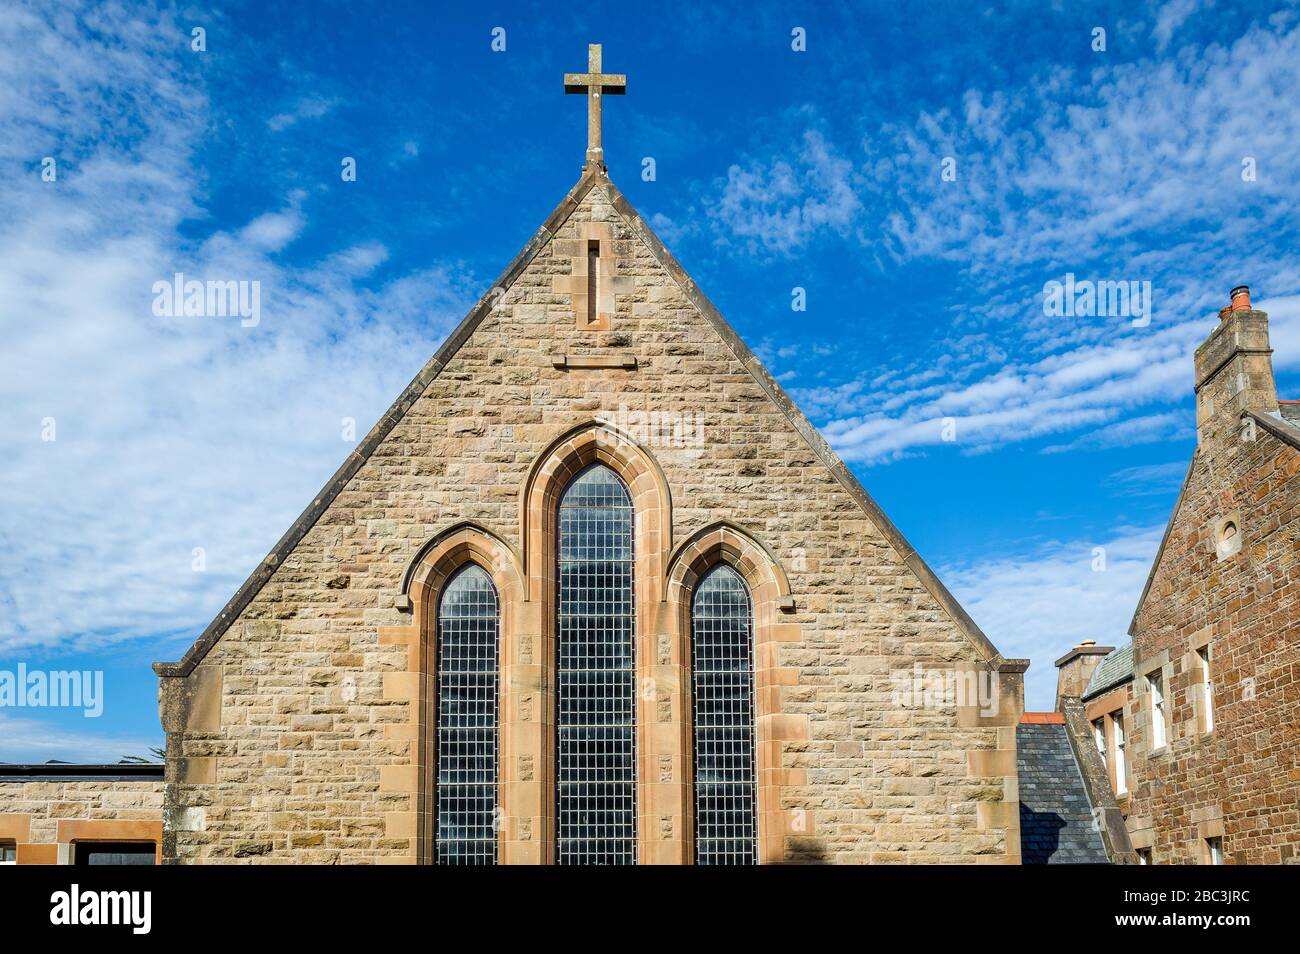 Vue avant de l'église médiévale de Campbeltown. Péninsule de Kintyre, Écosse Banque D'Images